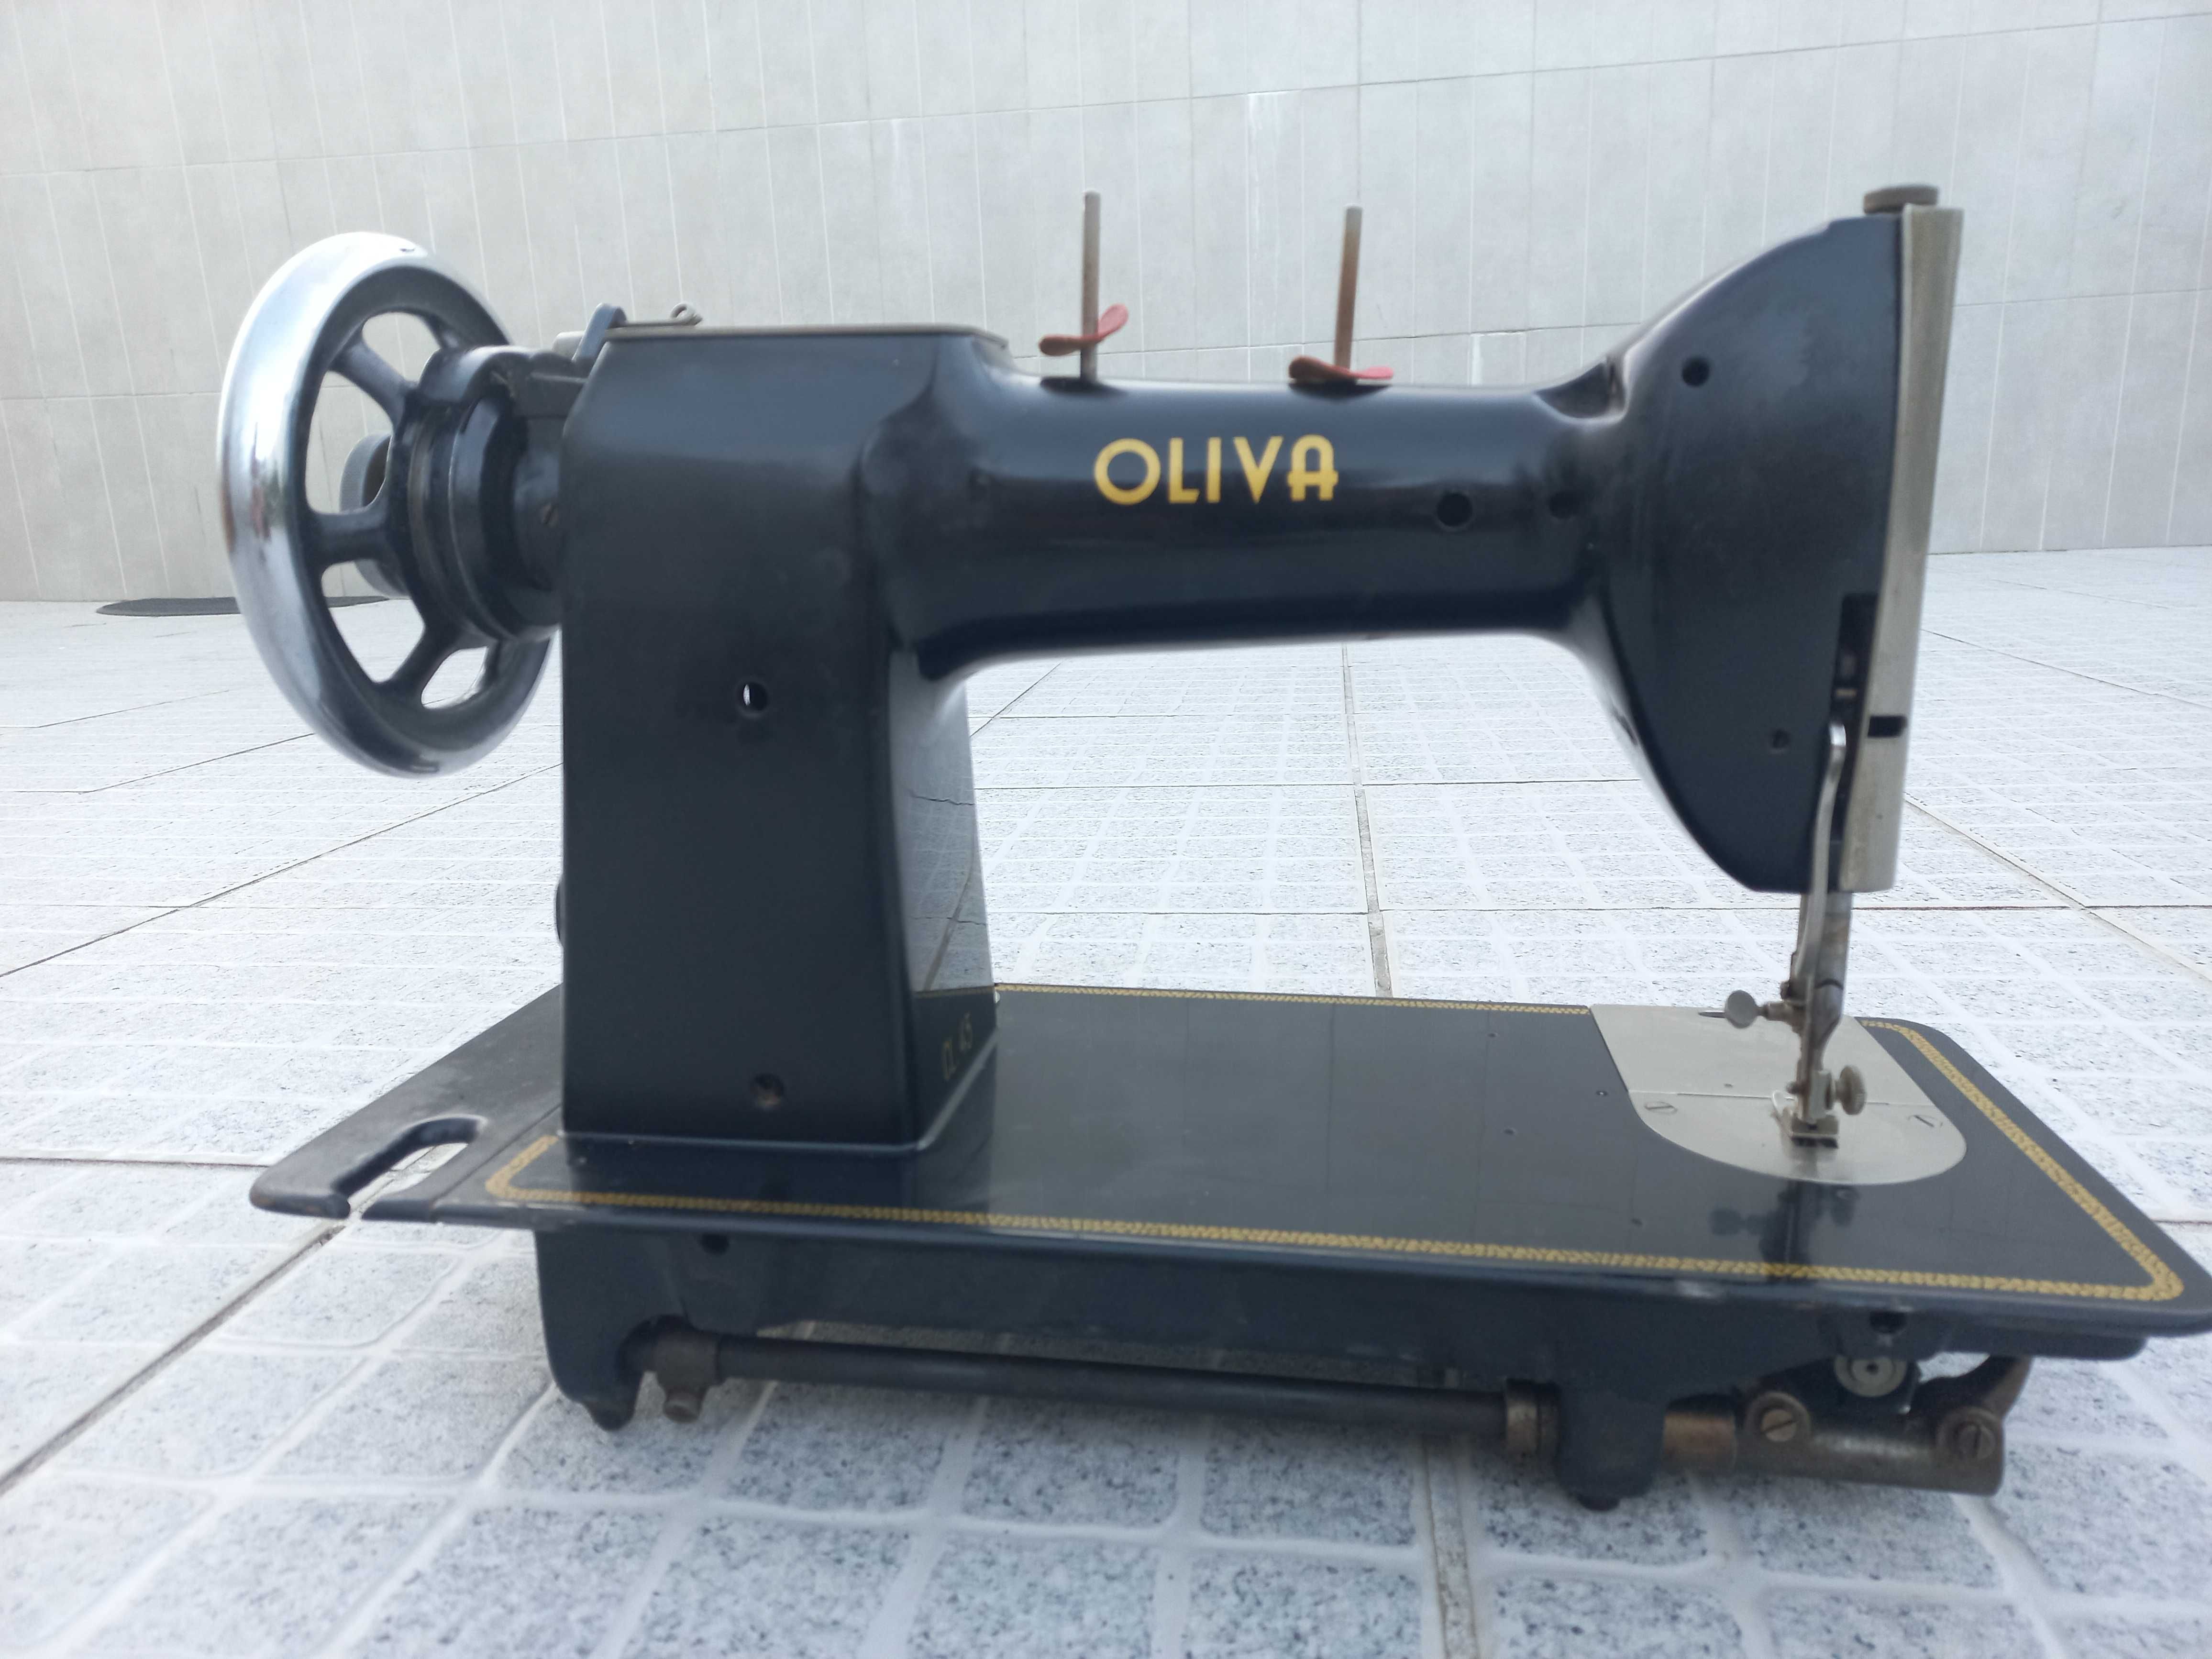 Maquina de costura antiga oliva